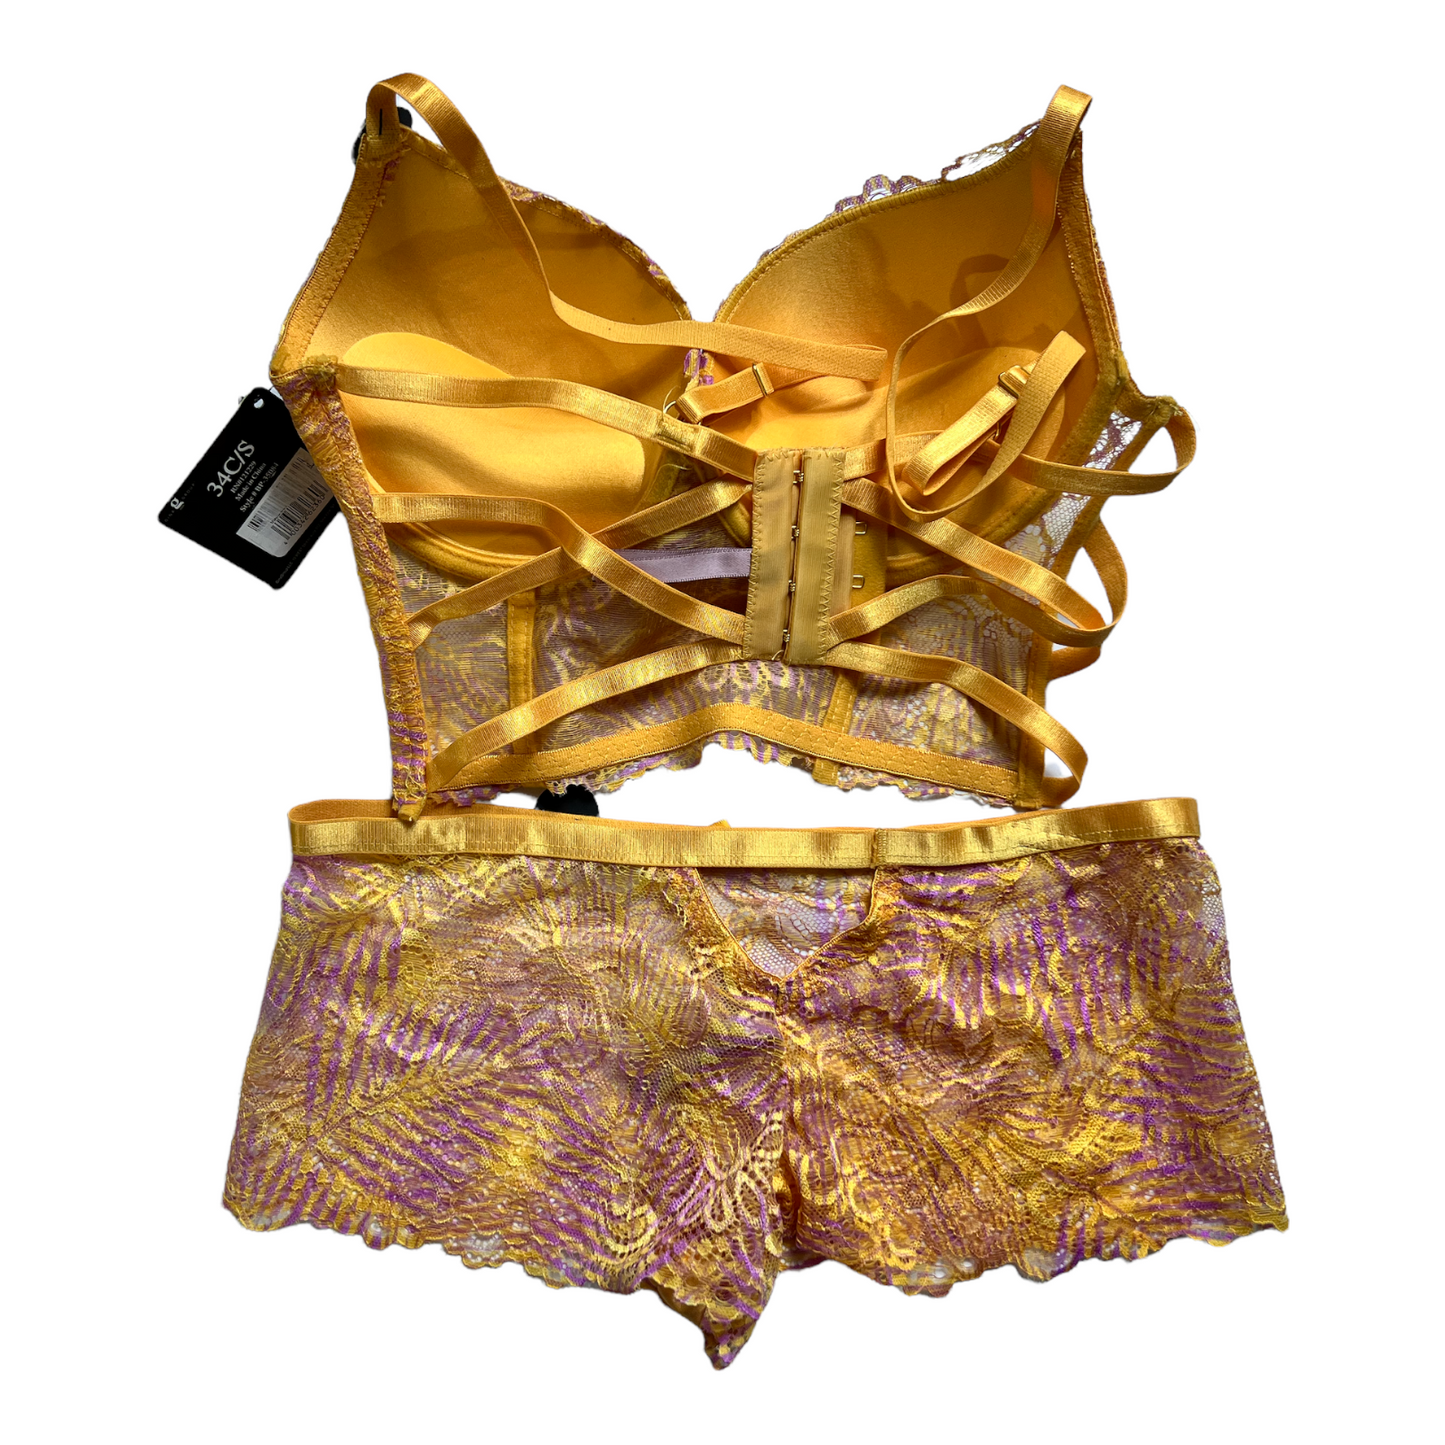 New Light Gold/Purple Lingerie Set size S 34c Bra & Lace Panty (Lingerie)